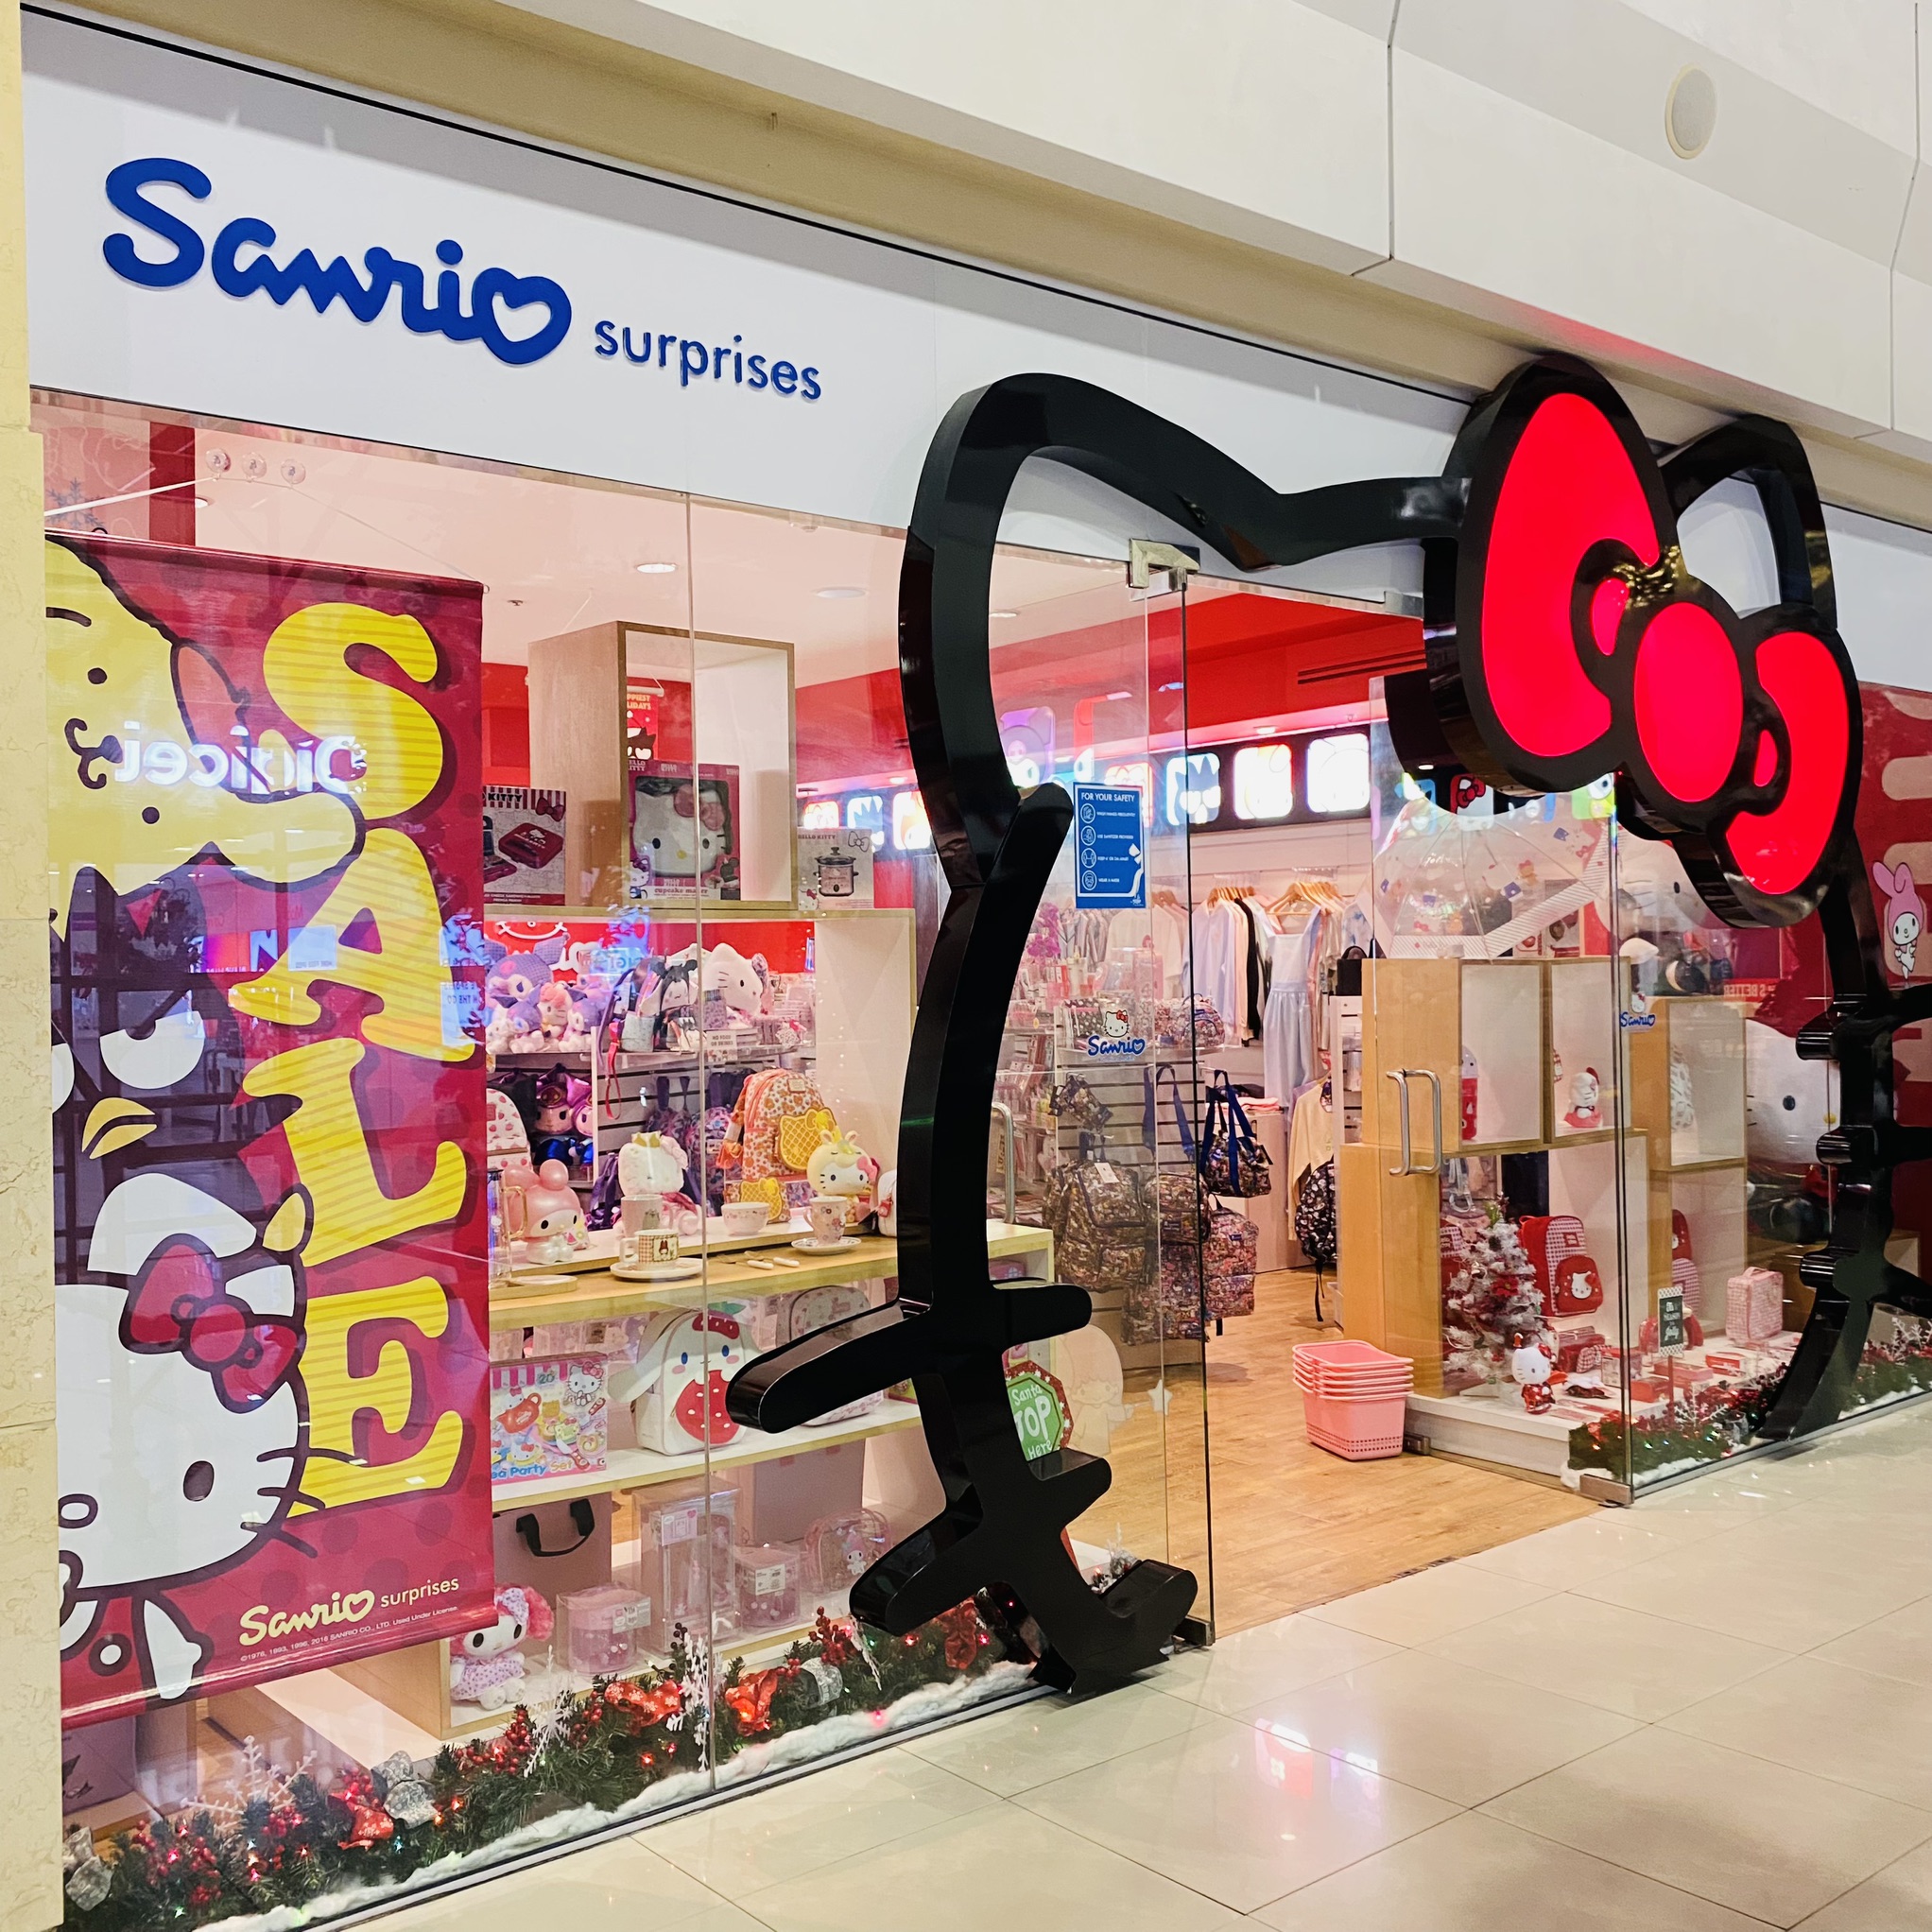 Sanrio Surprises West Mall